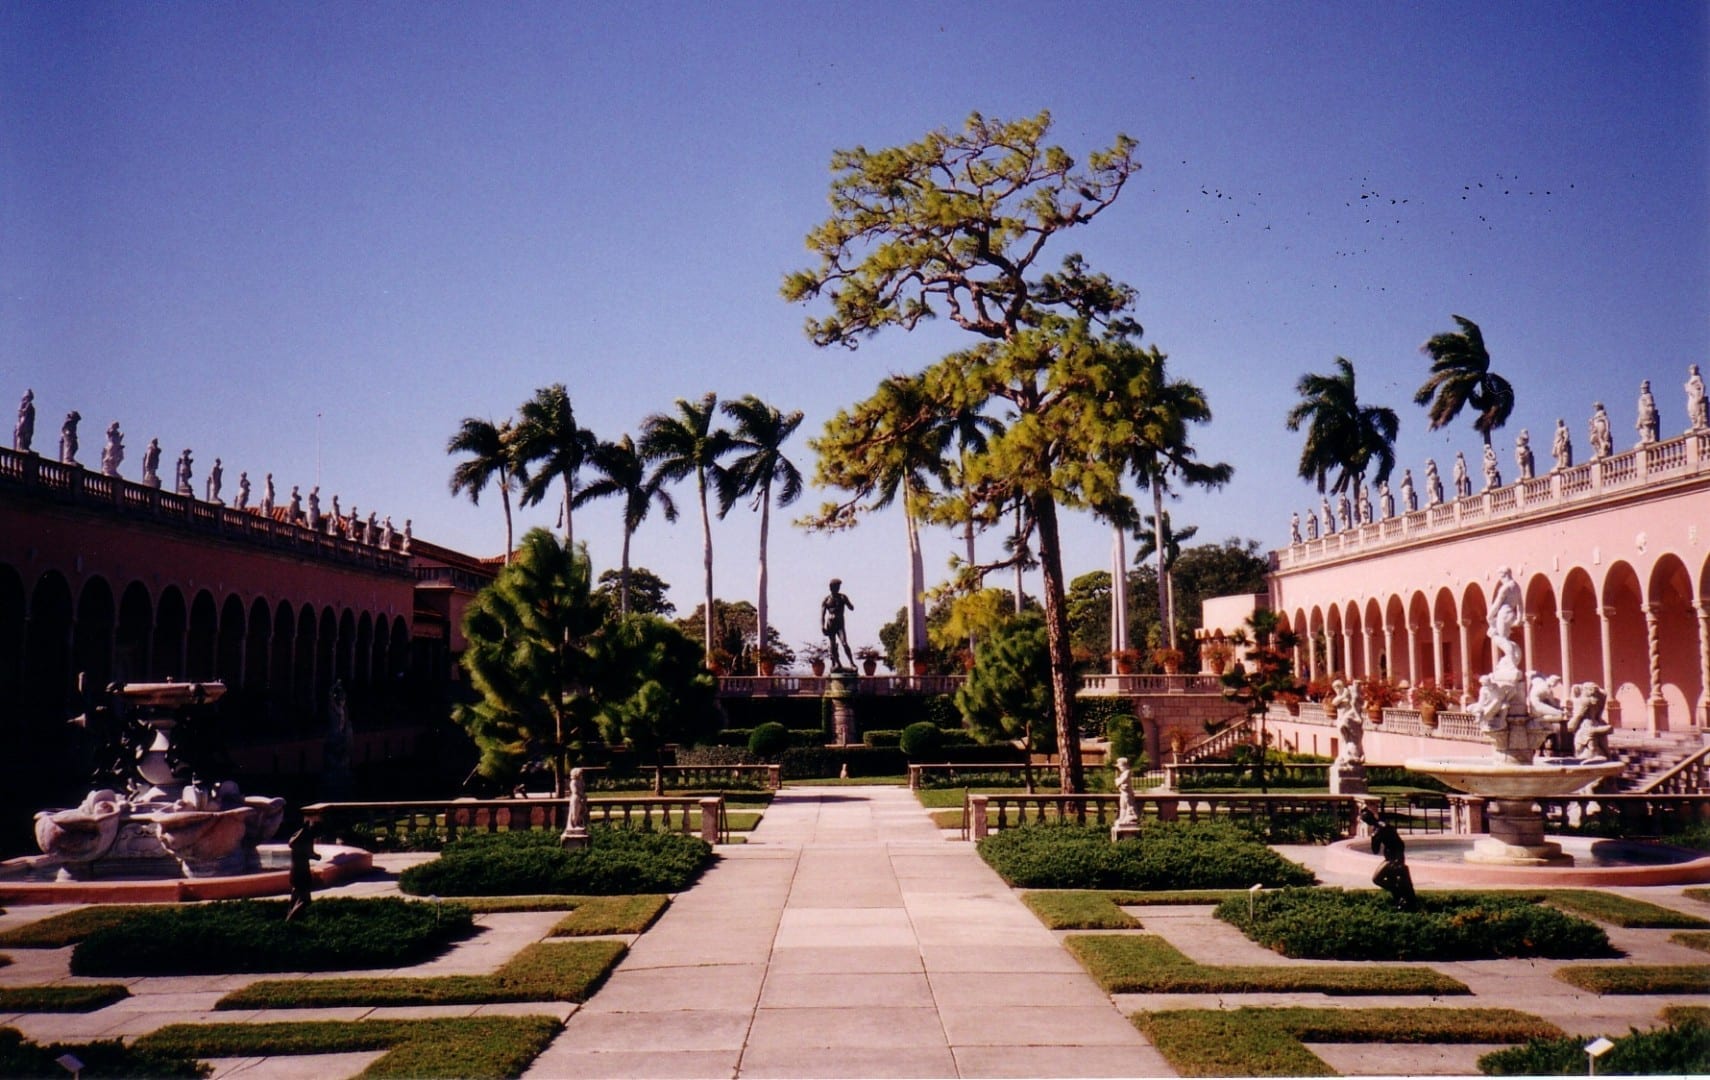 El jardín de la mansión Cà d'Zan Sarasota FL Estados Unidos